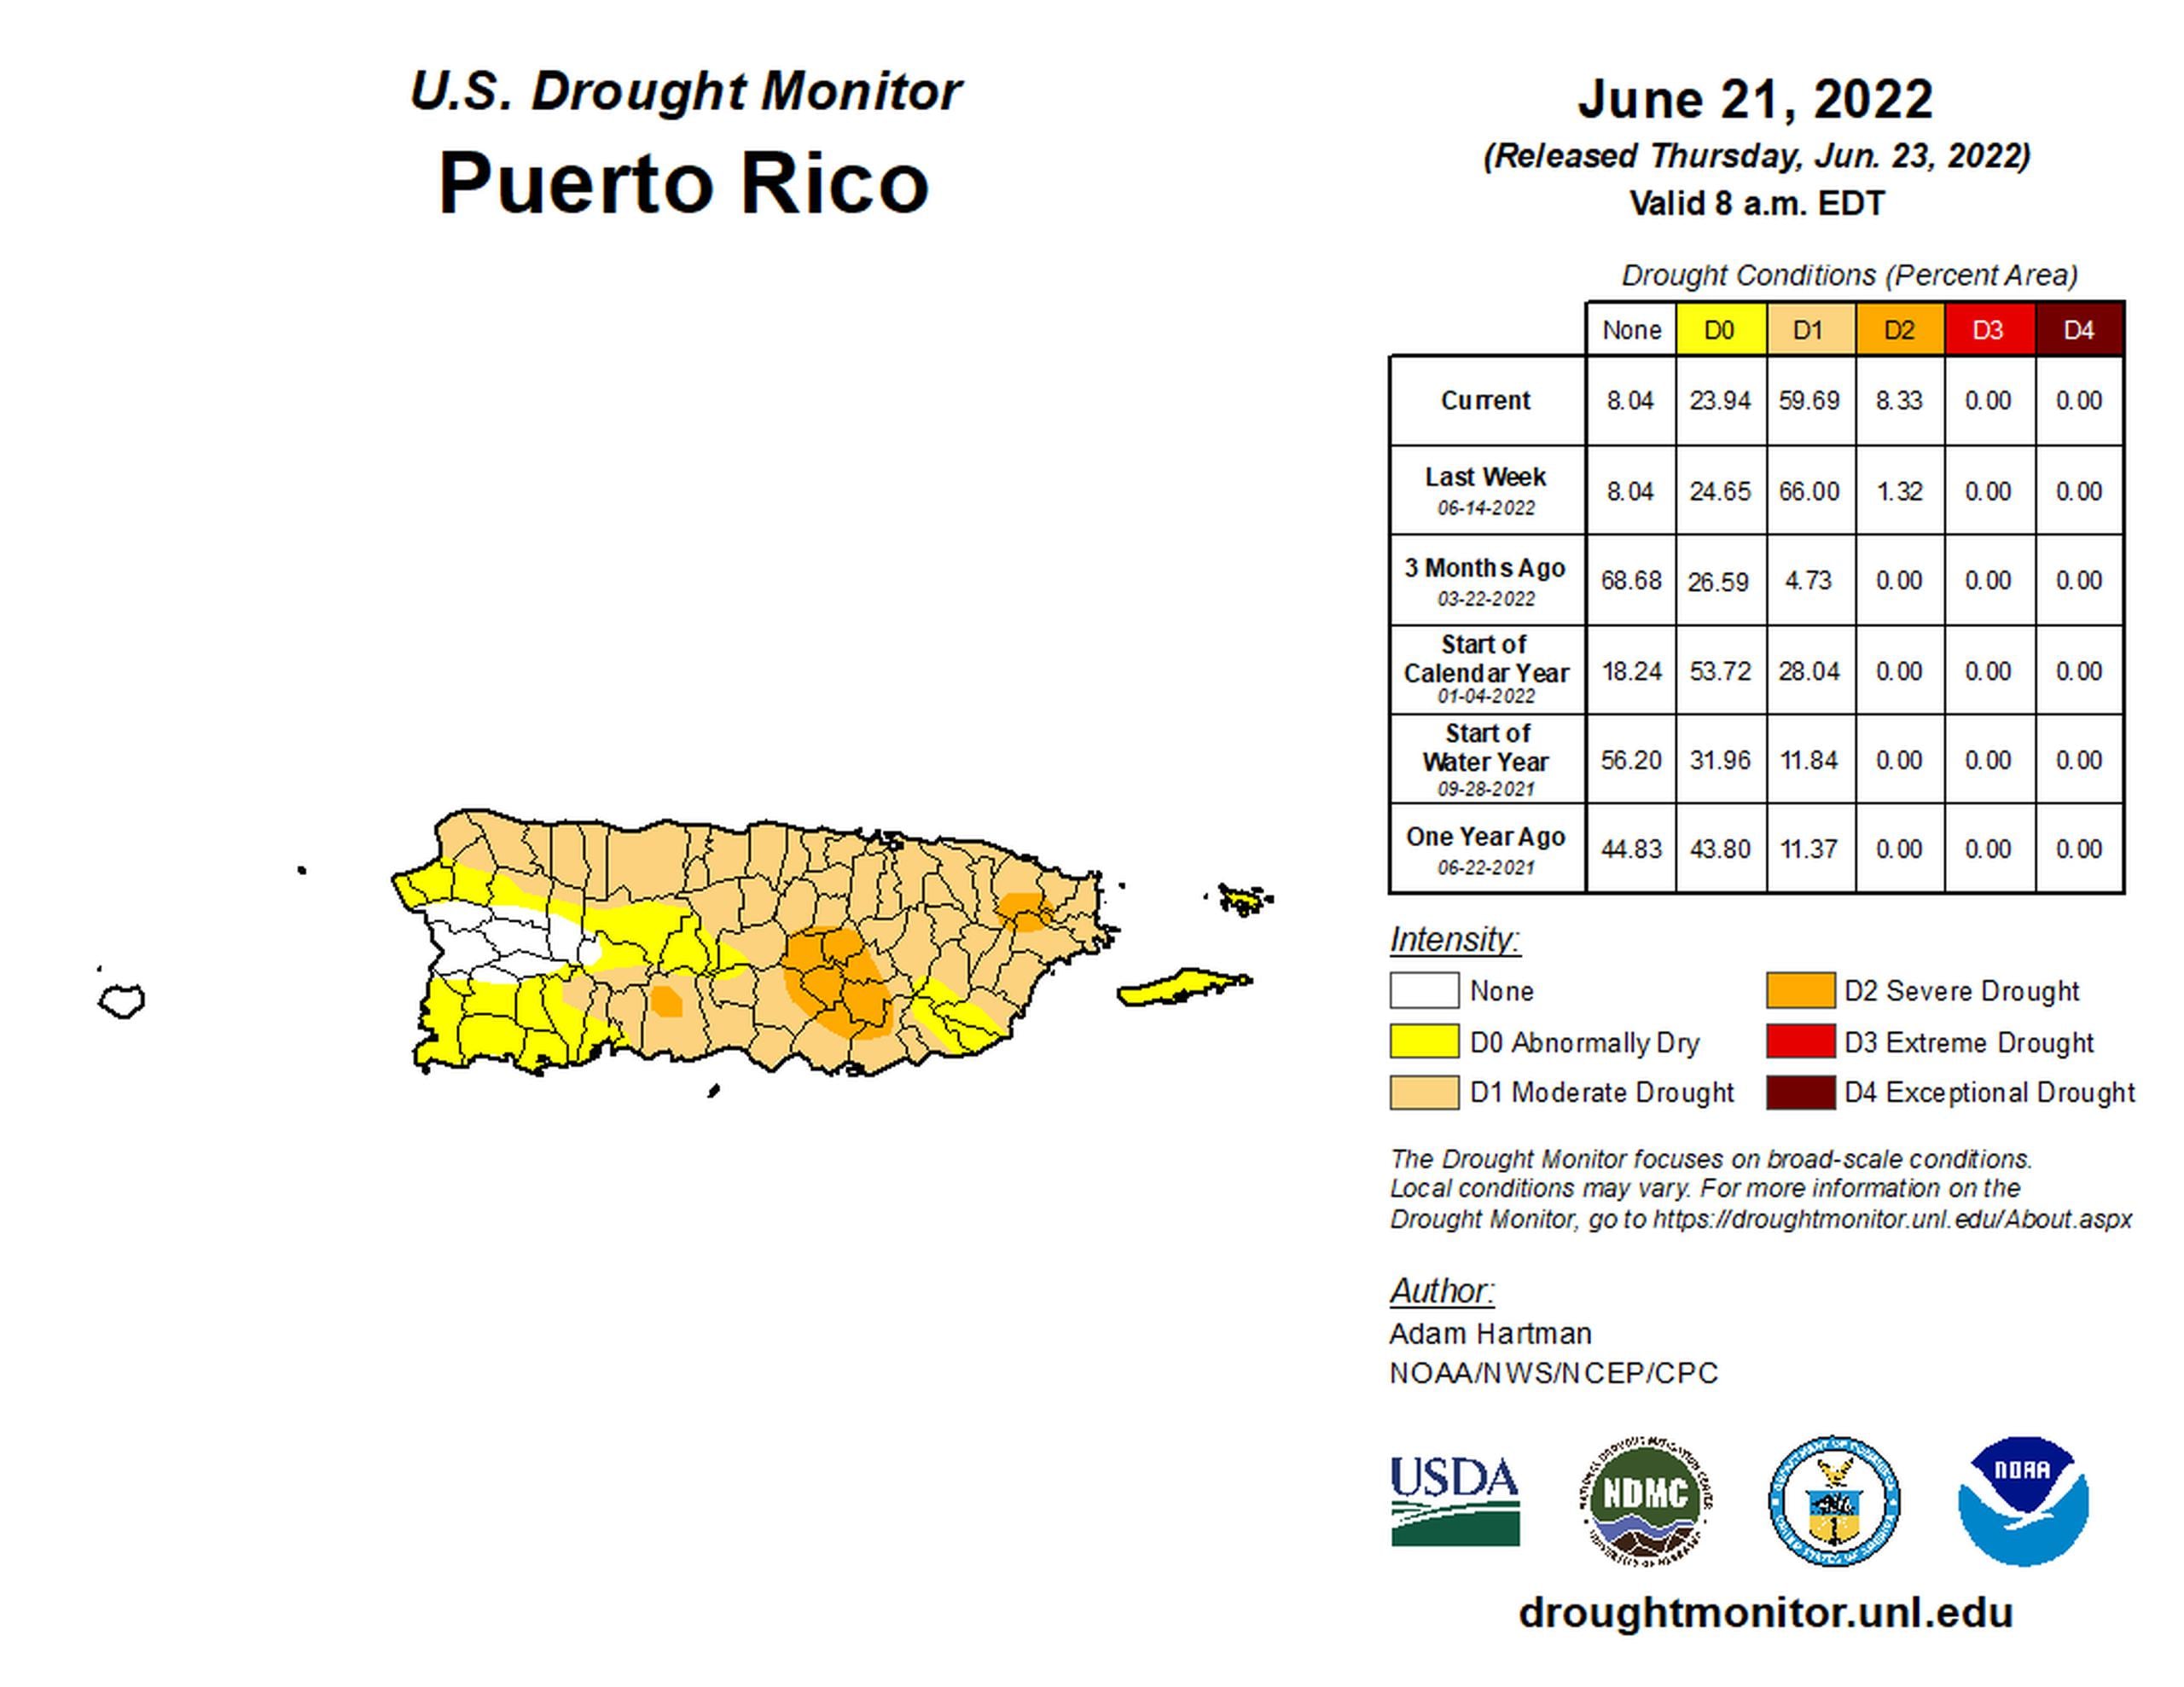 Mapa de la sequía en Puerto Rico publicado el 23 de junio de 2022 con datos del 21 de junio de 2022.